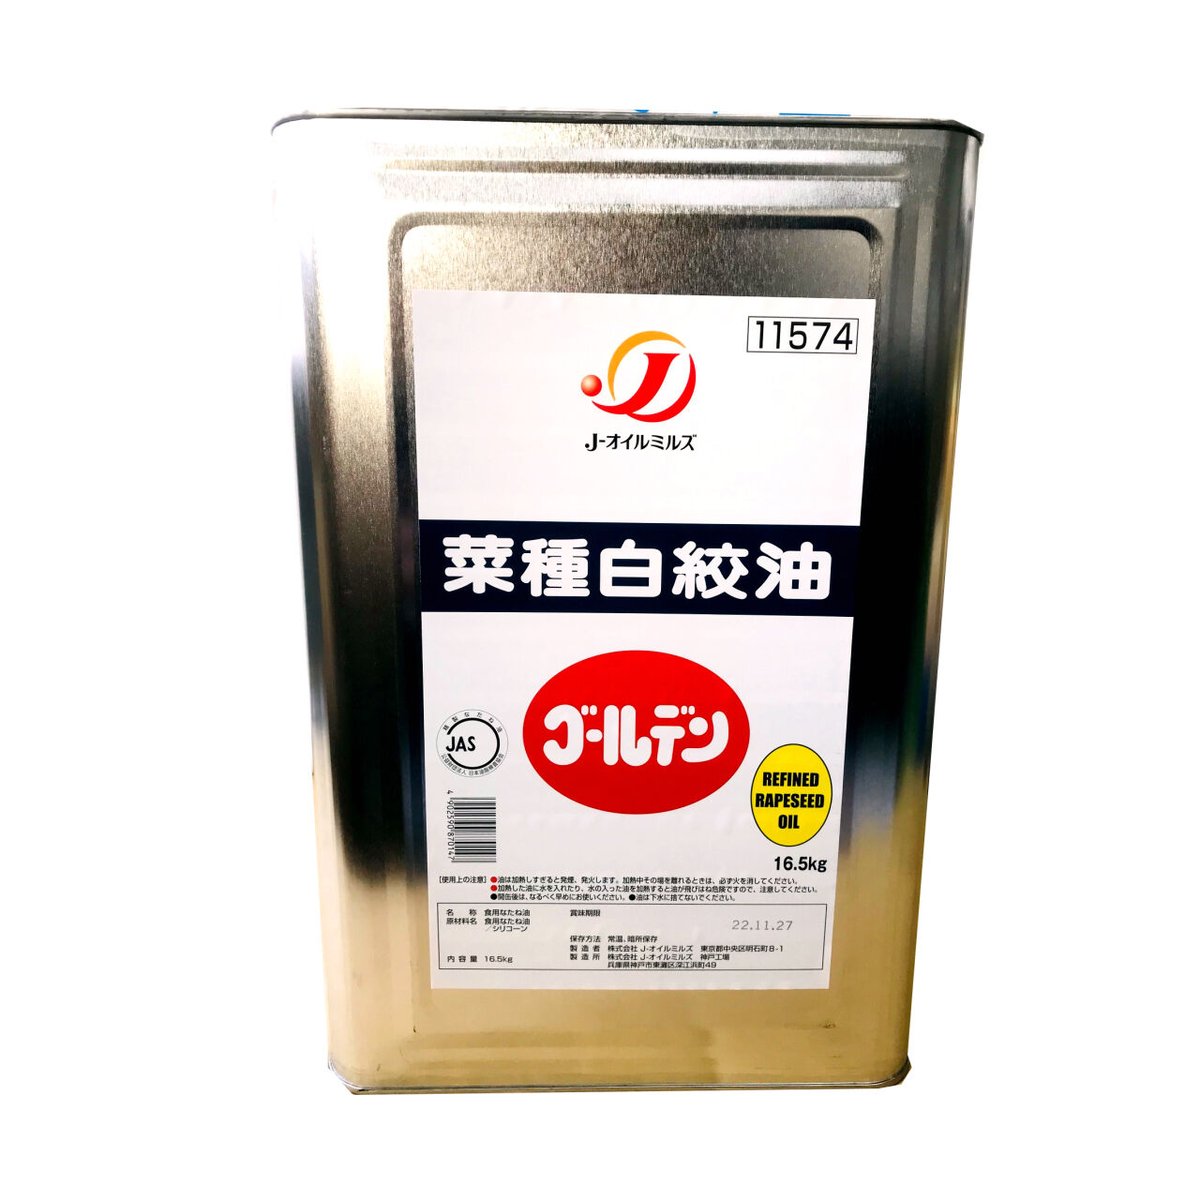 理研農産化工 大豆白絞油 16.5kg 業務用 一斗缶 - 調味料・料理の素・油